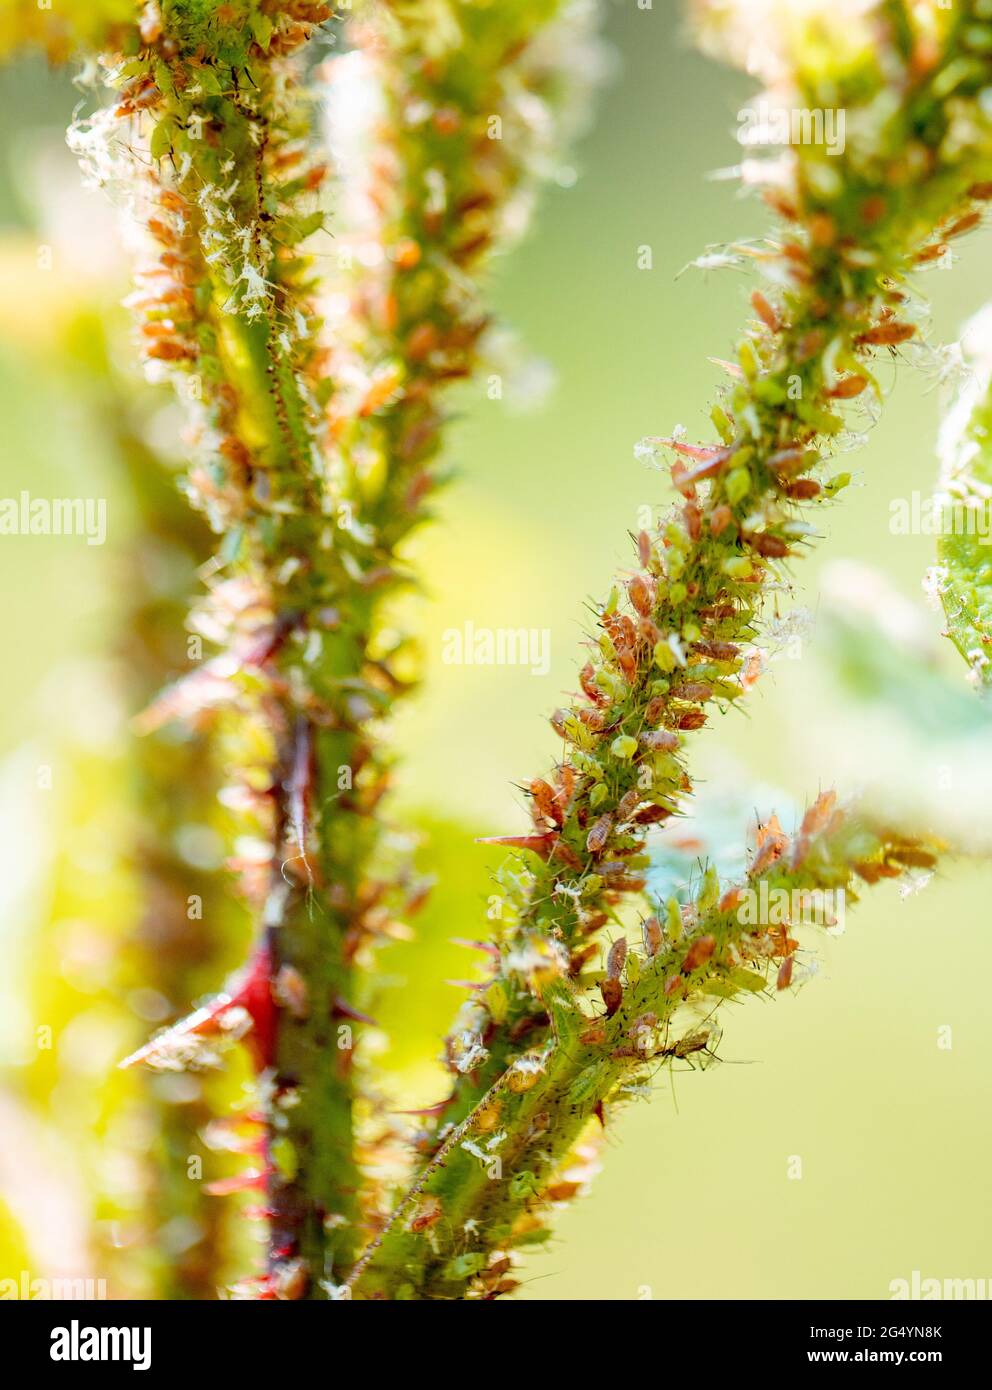 Blattläuse und Milben auf einem Rosenschießen, Nahaufnahme Stockfotografie  - Alamy